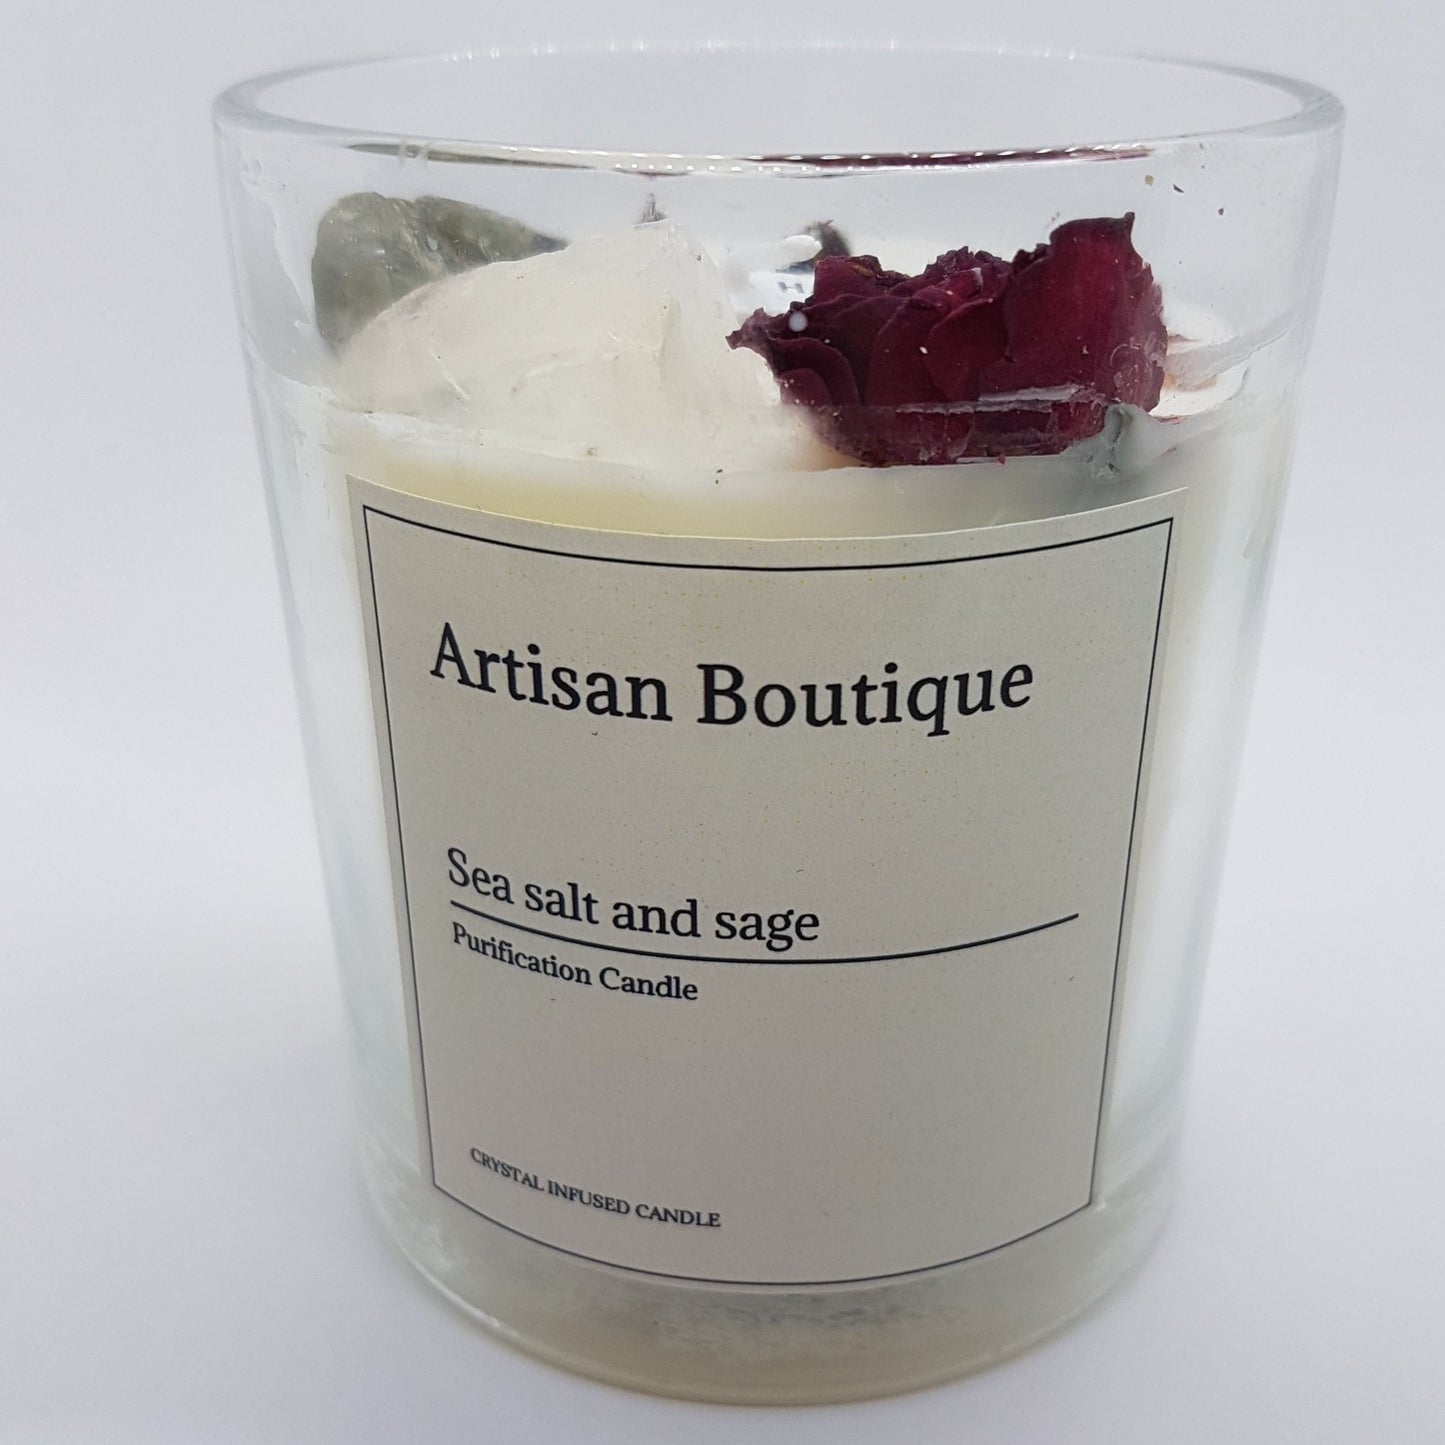 Handmade Sea Salt & Sage Crystal Infused Candle